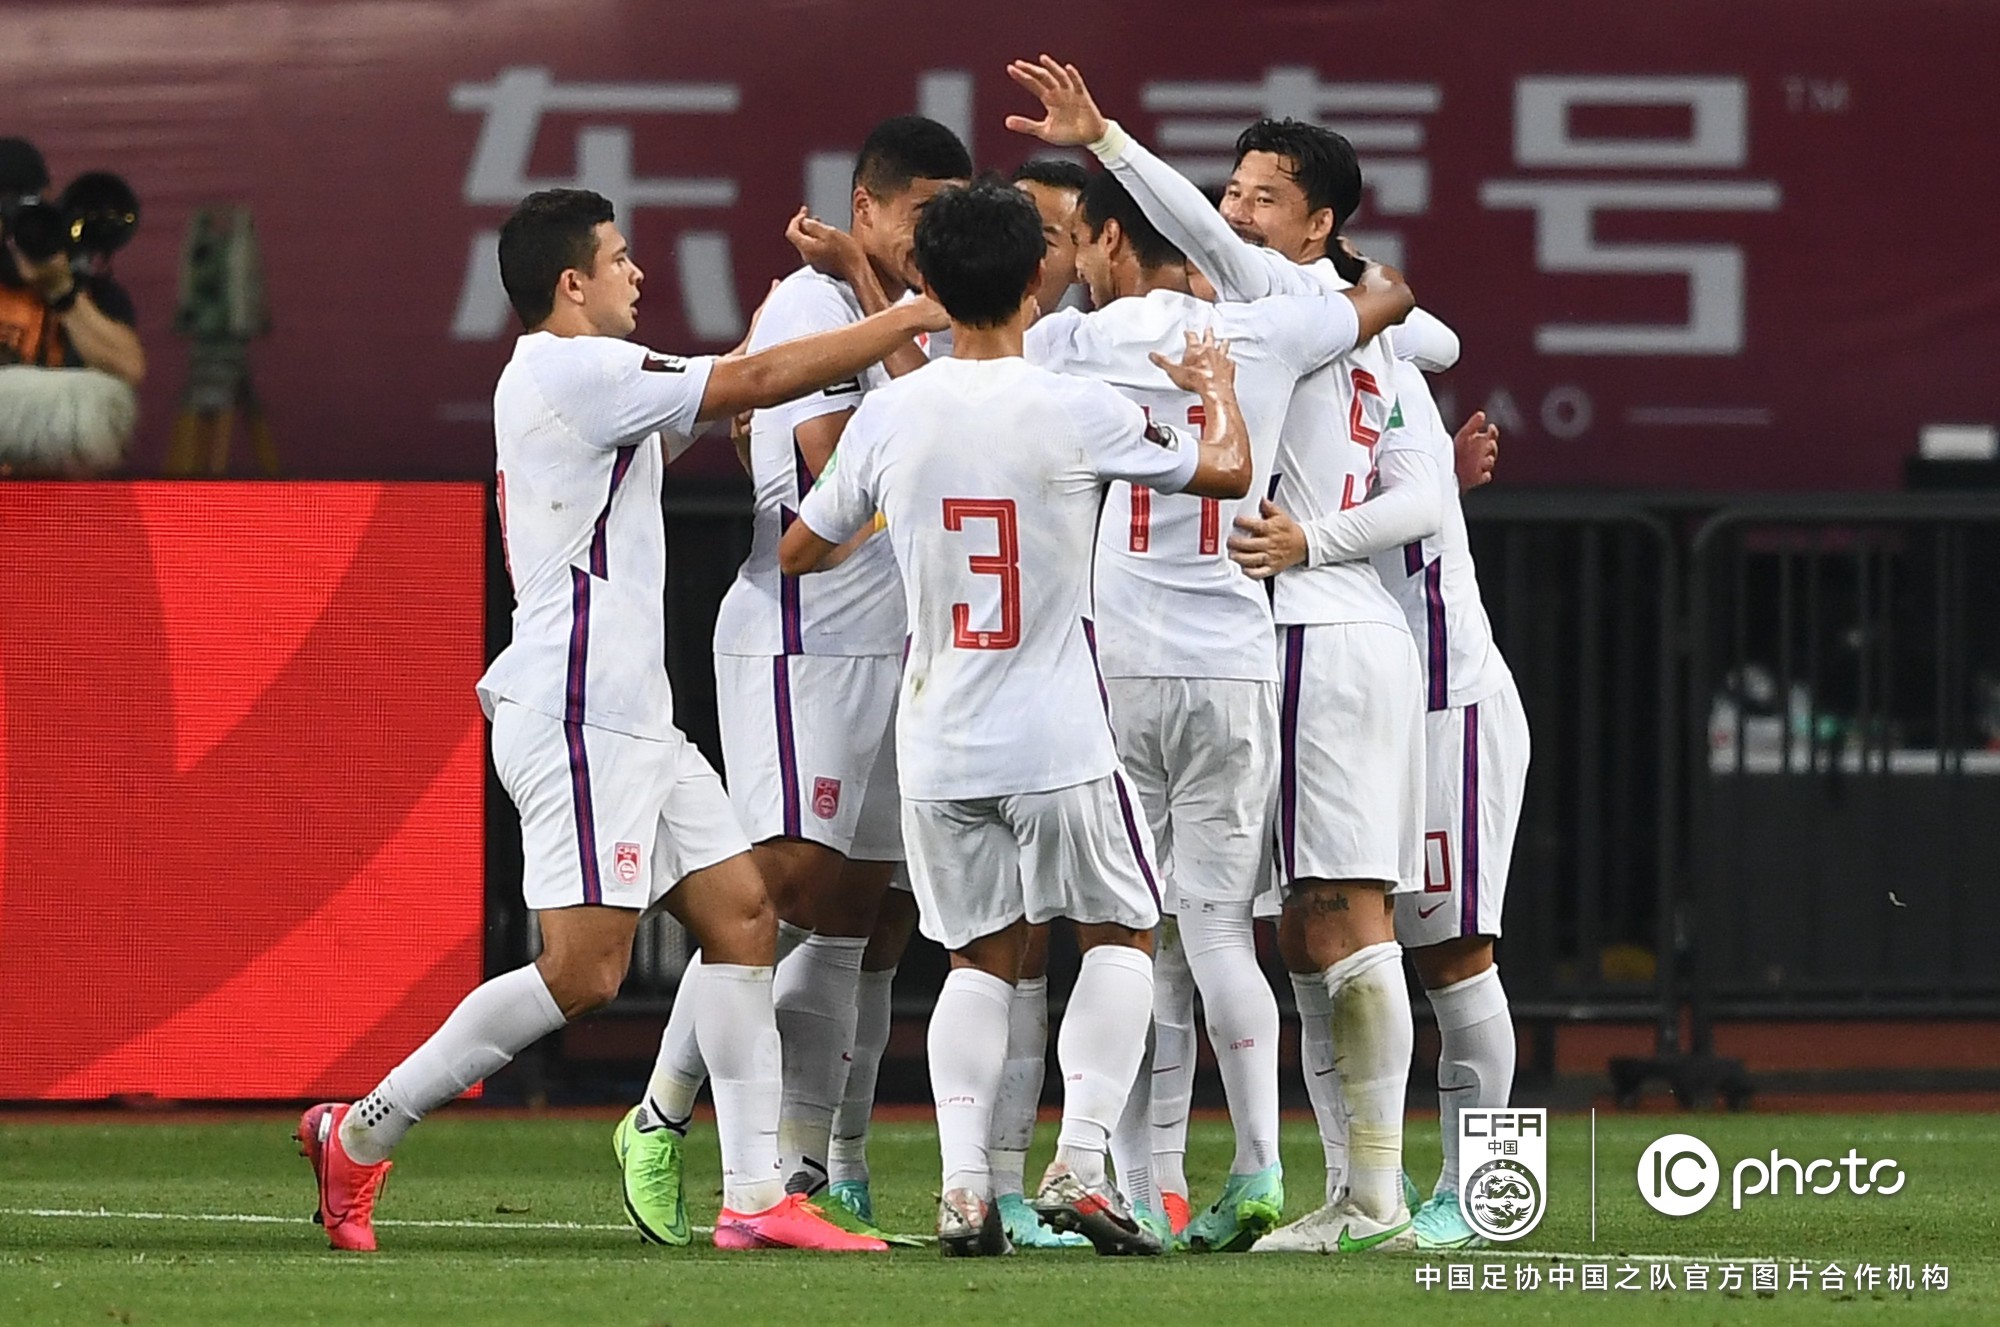 世預賽40強賽中國隊7:0大勝關島隊 武磊阿蘭雙雙梅開二度 